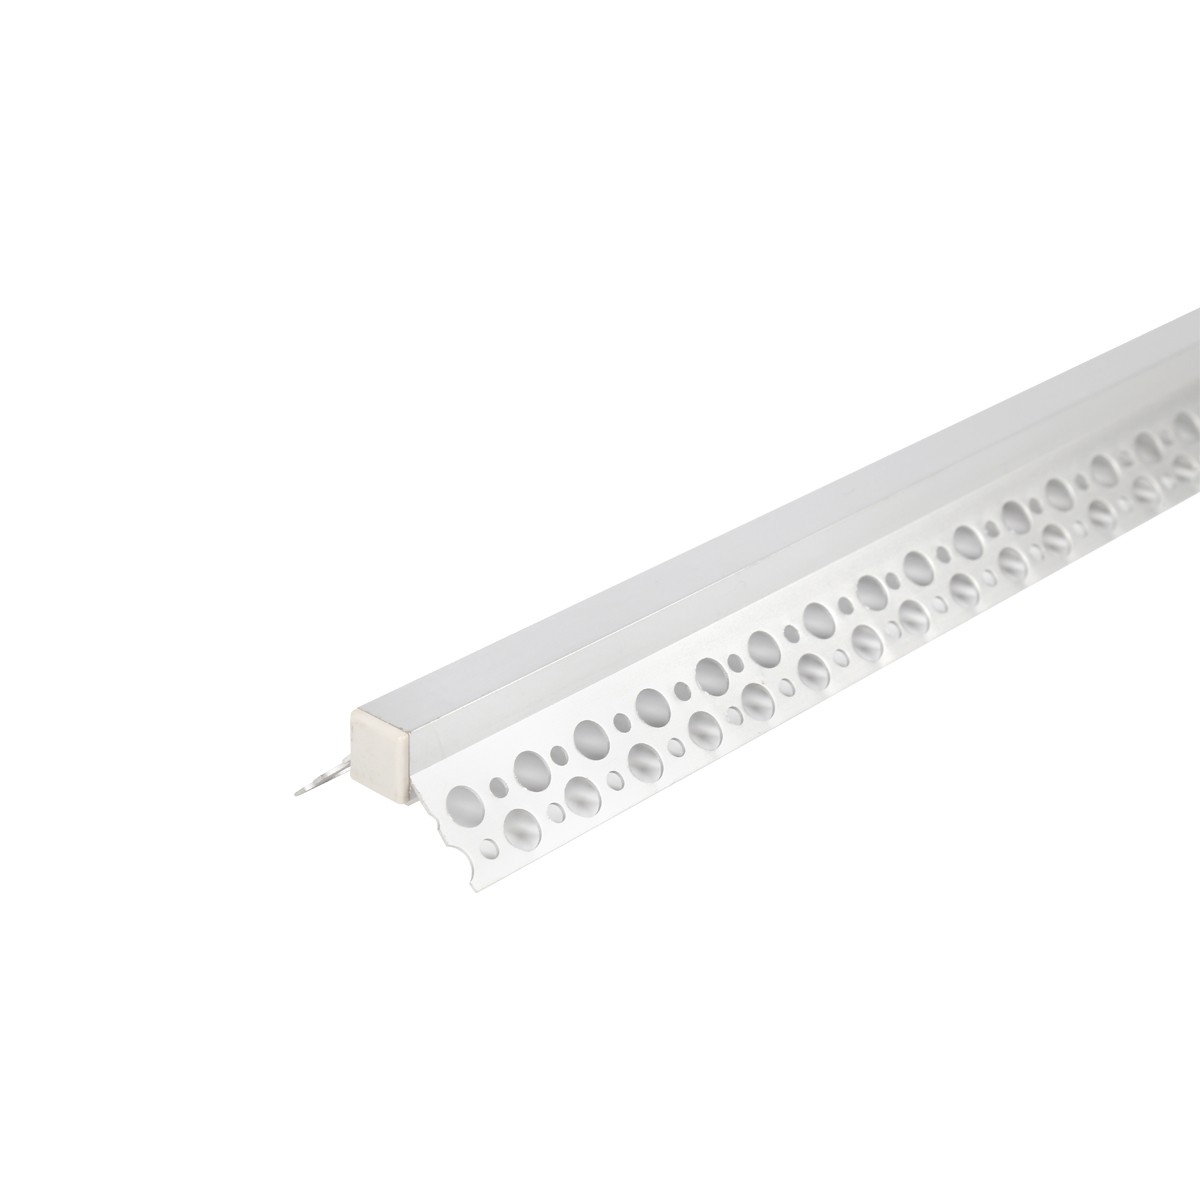 嵌入式线条灯石膏花边铝材地脚线LED硬灯条可埋墙体